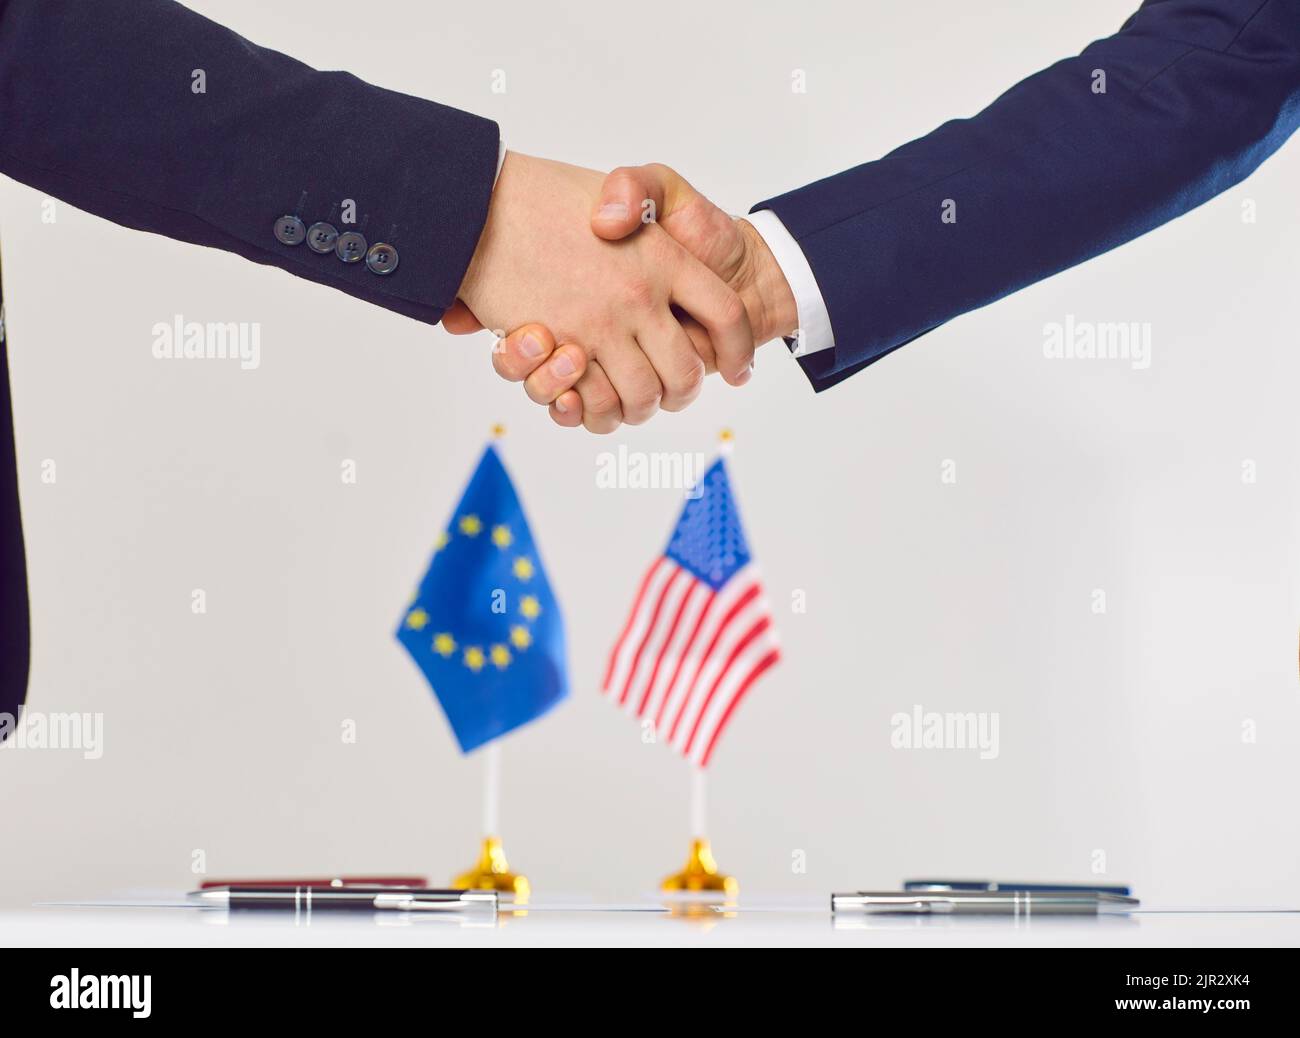 Deux diplomates ou politiciens des États-Unis et de l'Union européenne se mettent la main à la table des négociations Banque D'Images